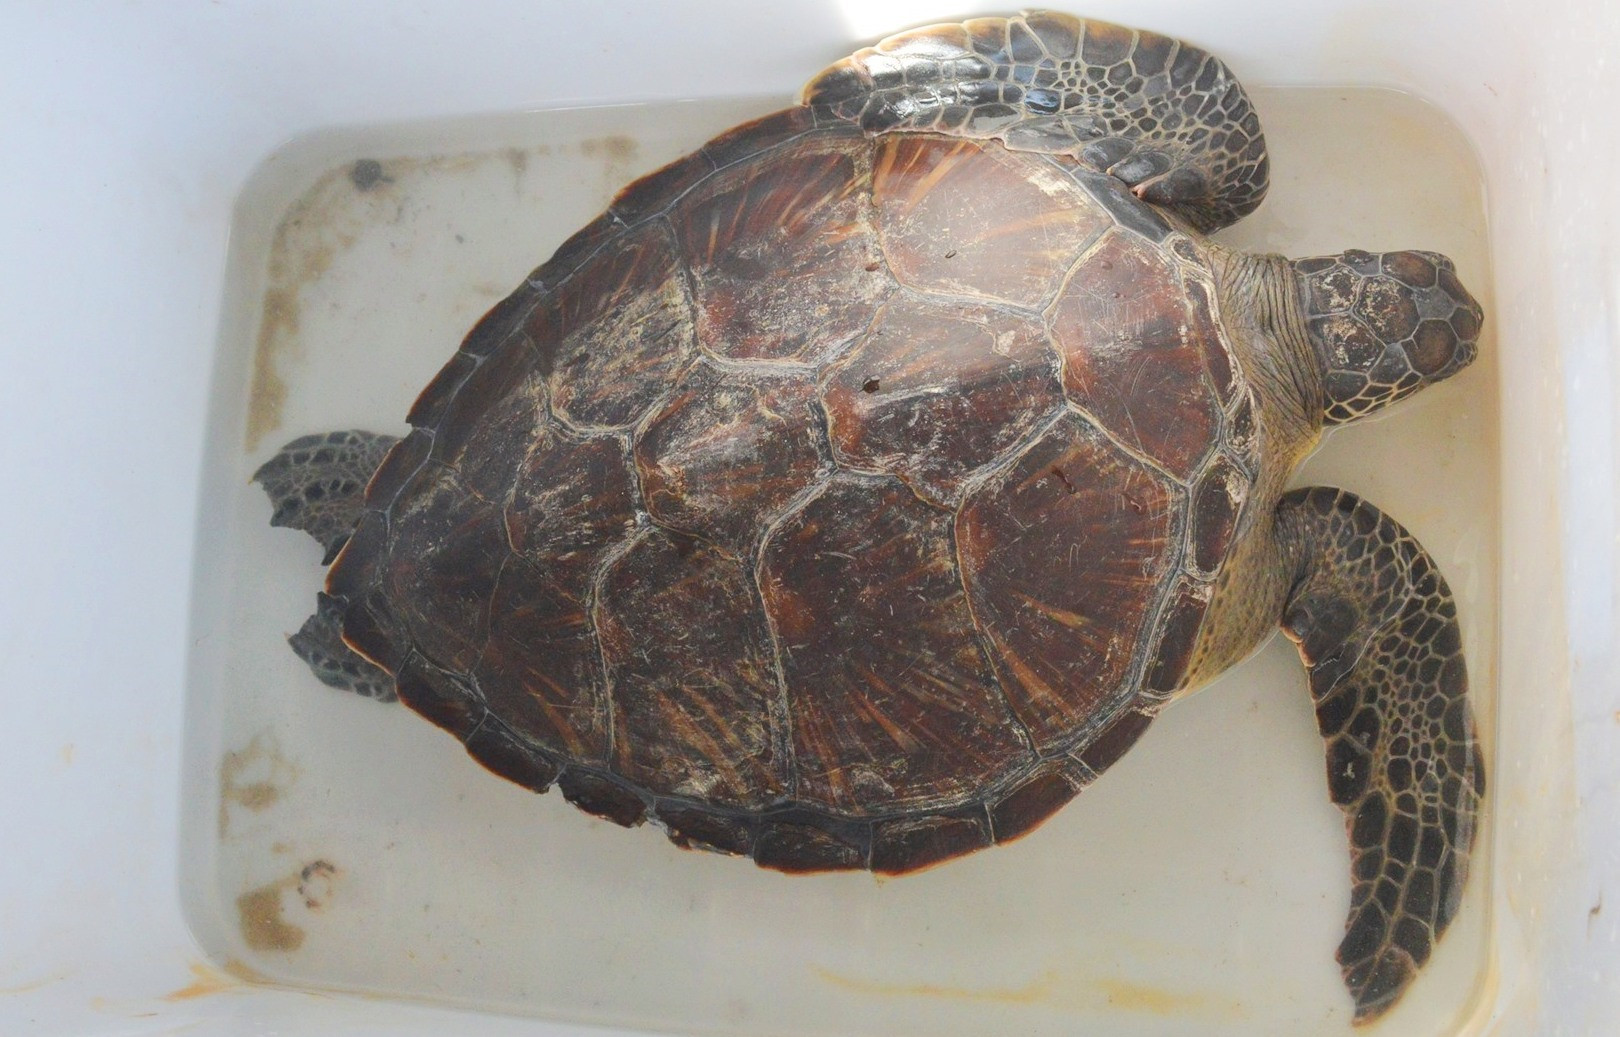 Cá thể rùa biển được thả nặng 10.5kg